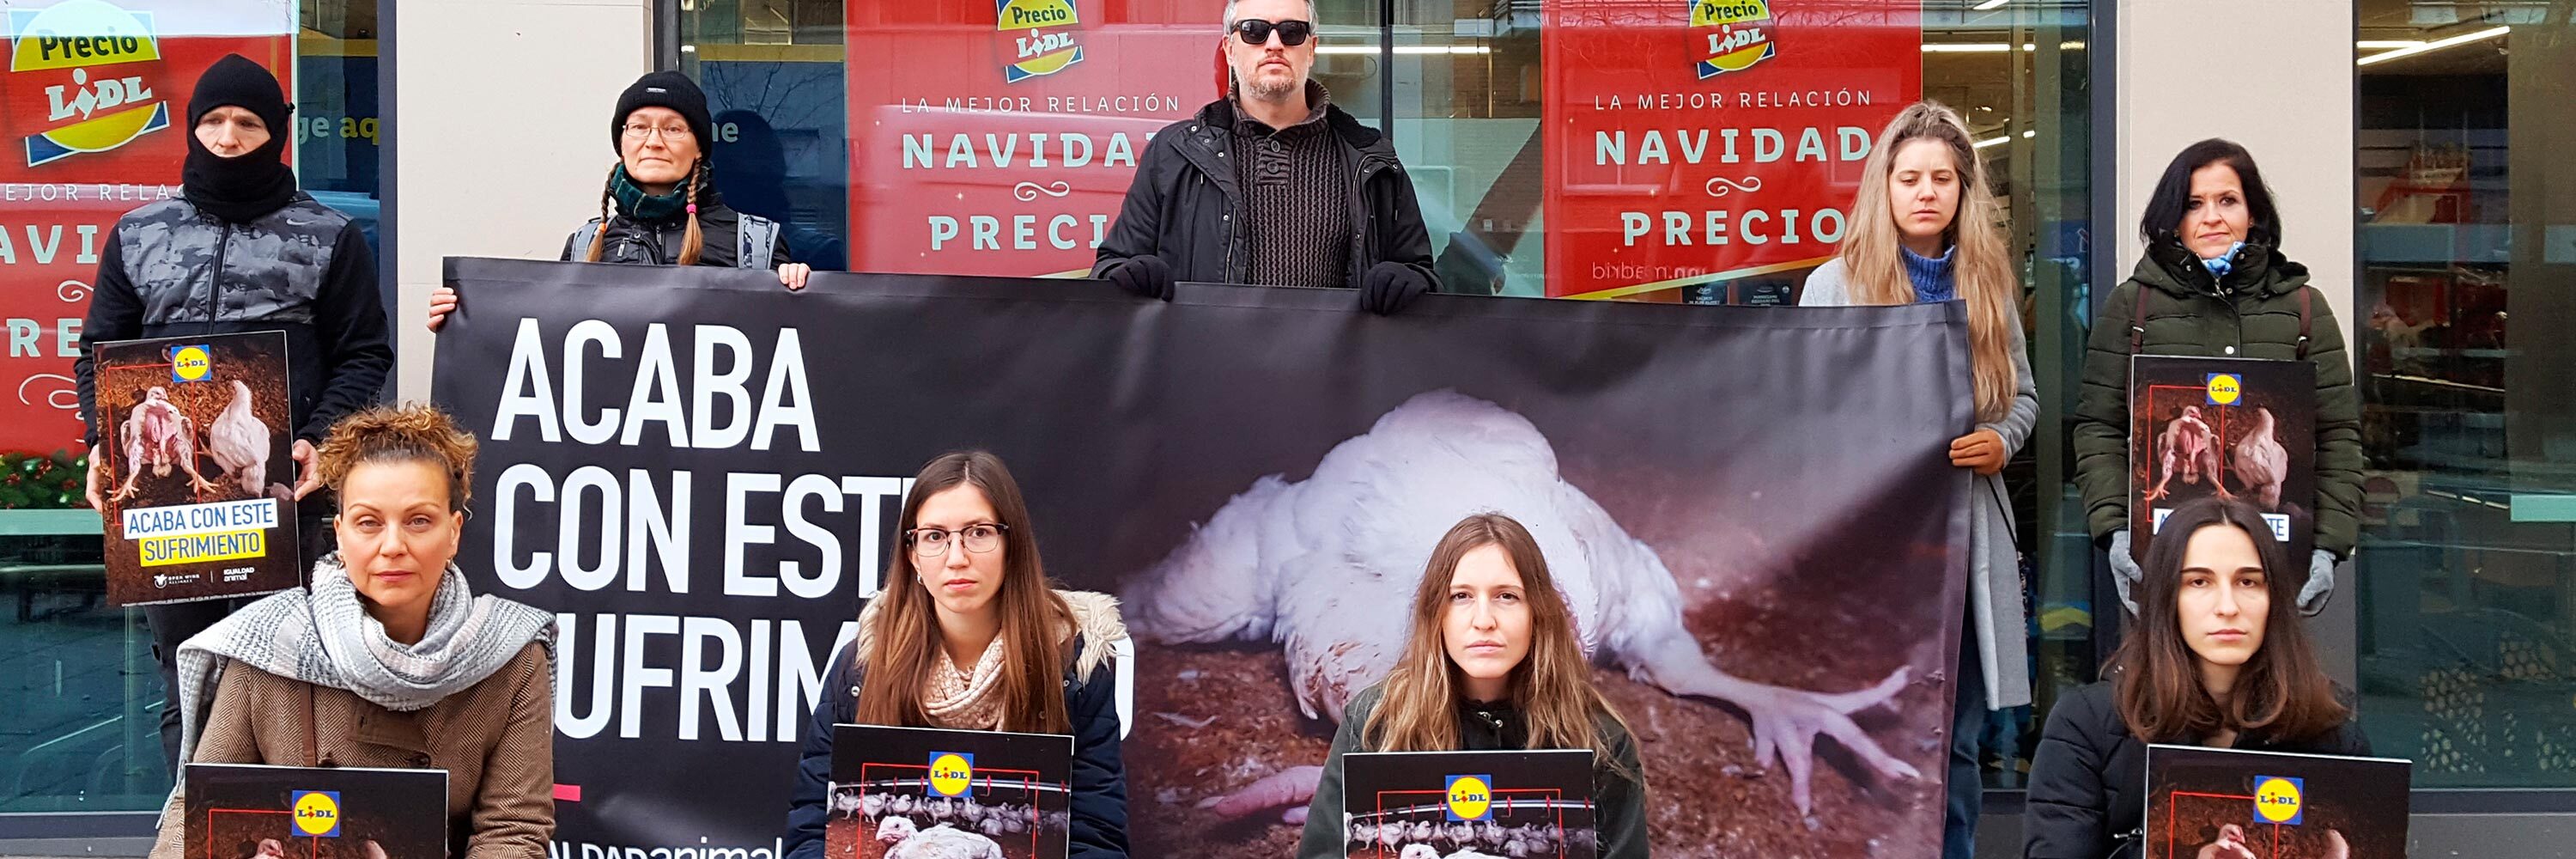 Protesta de Igualdad Animal en Lidl, Madrid